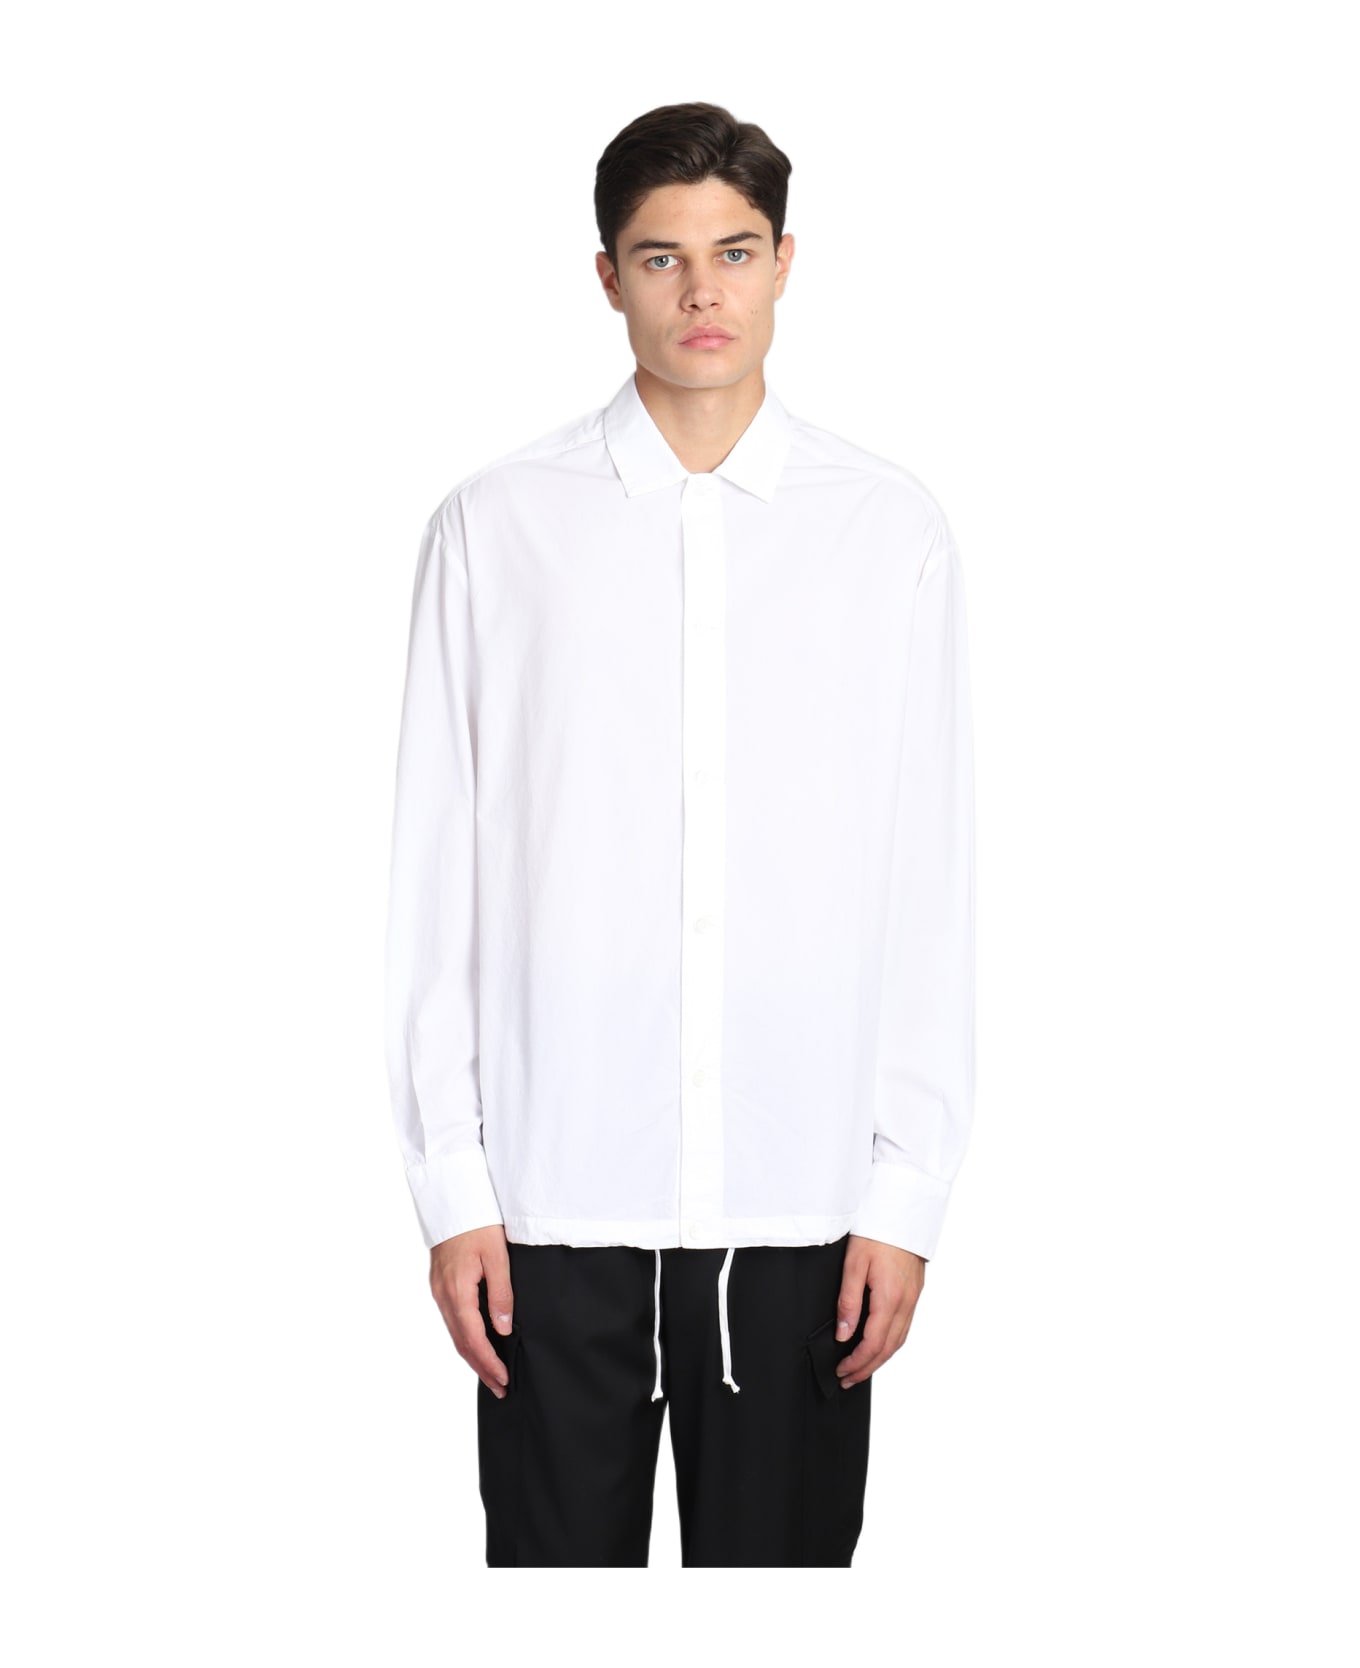 Barena Bao Shirt In White Cotton - Bianco